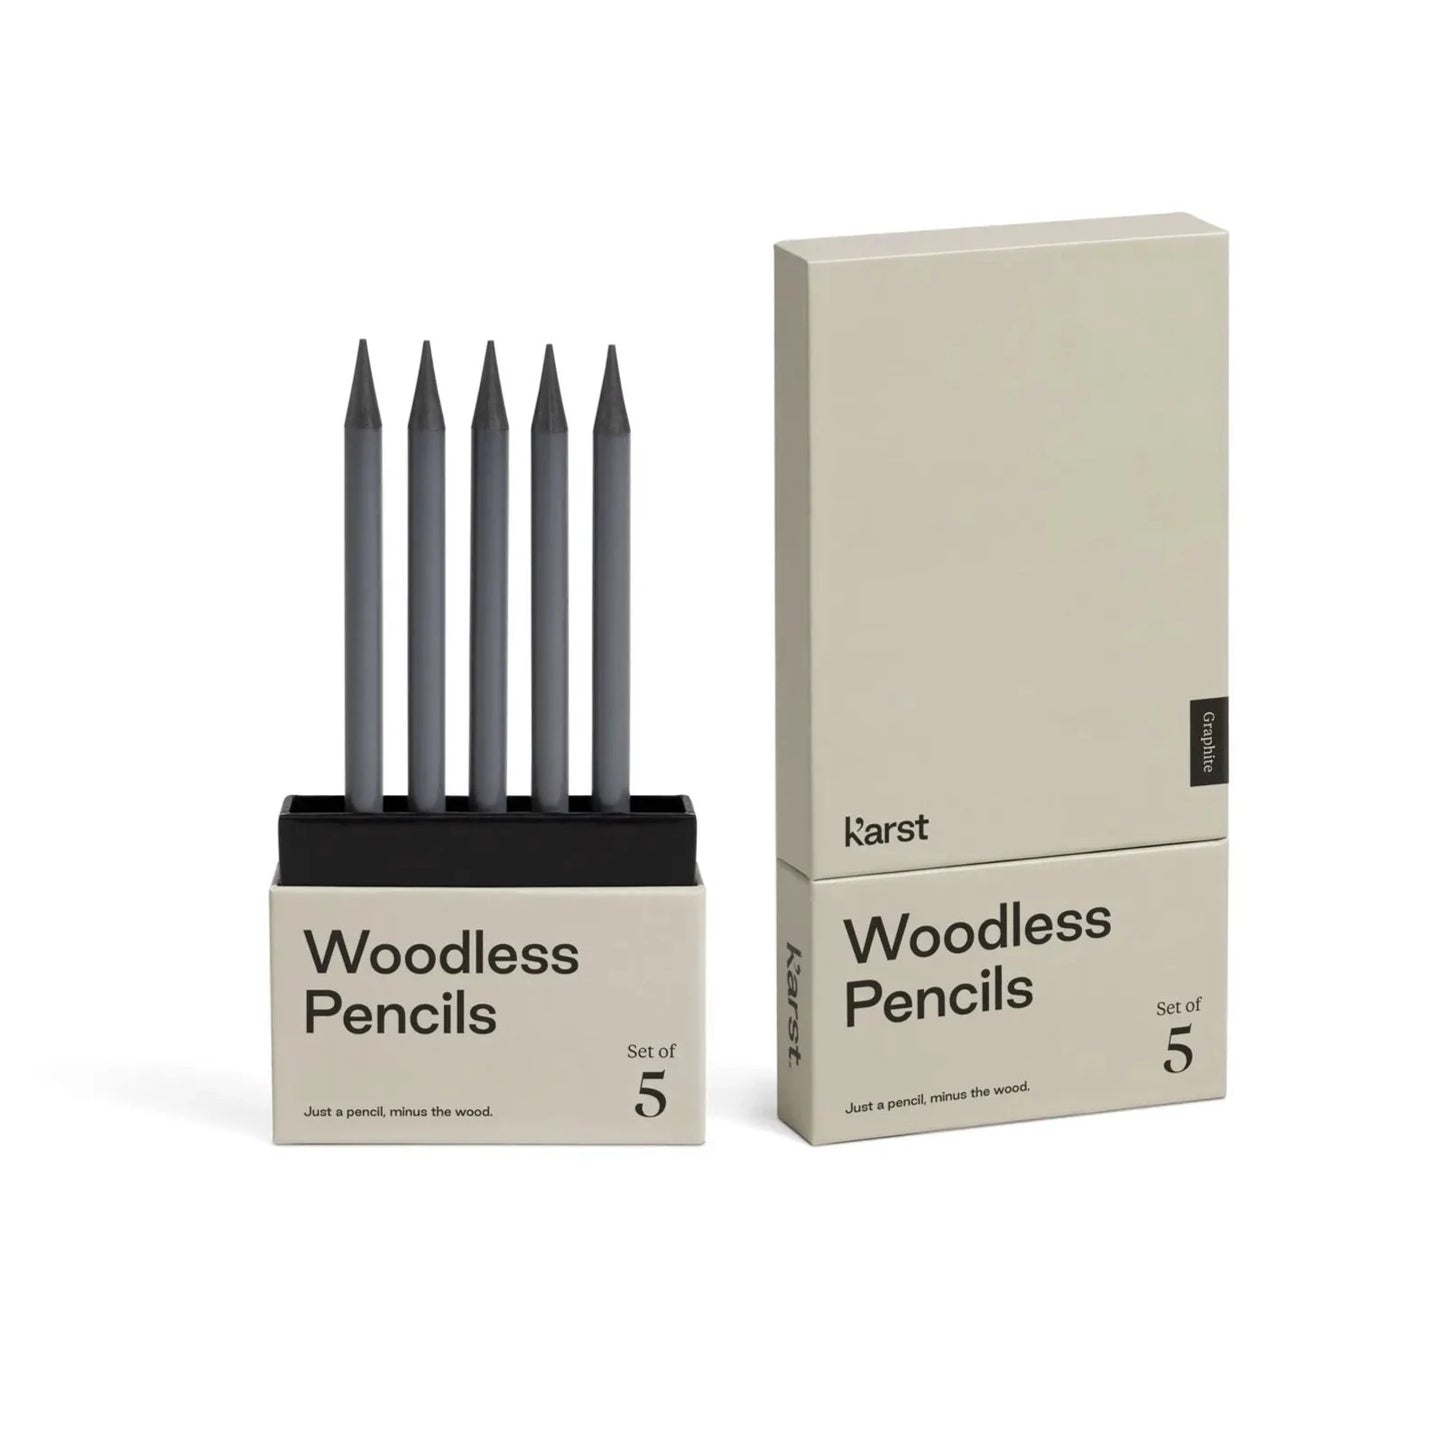 Karst - Woodless Pencils